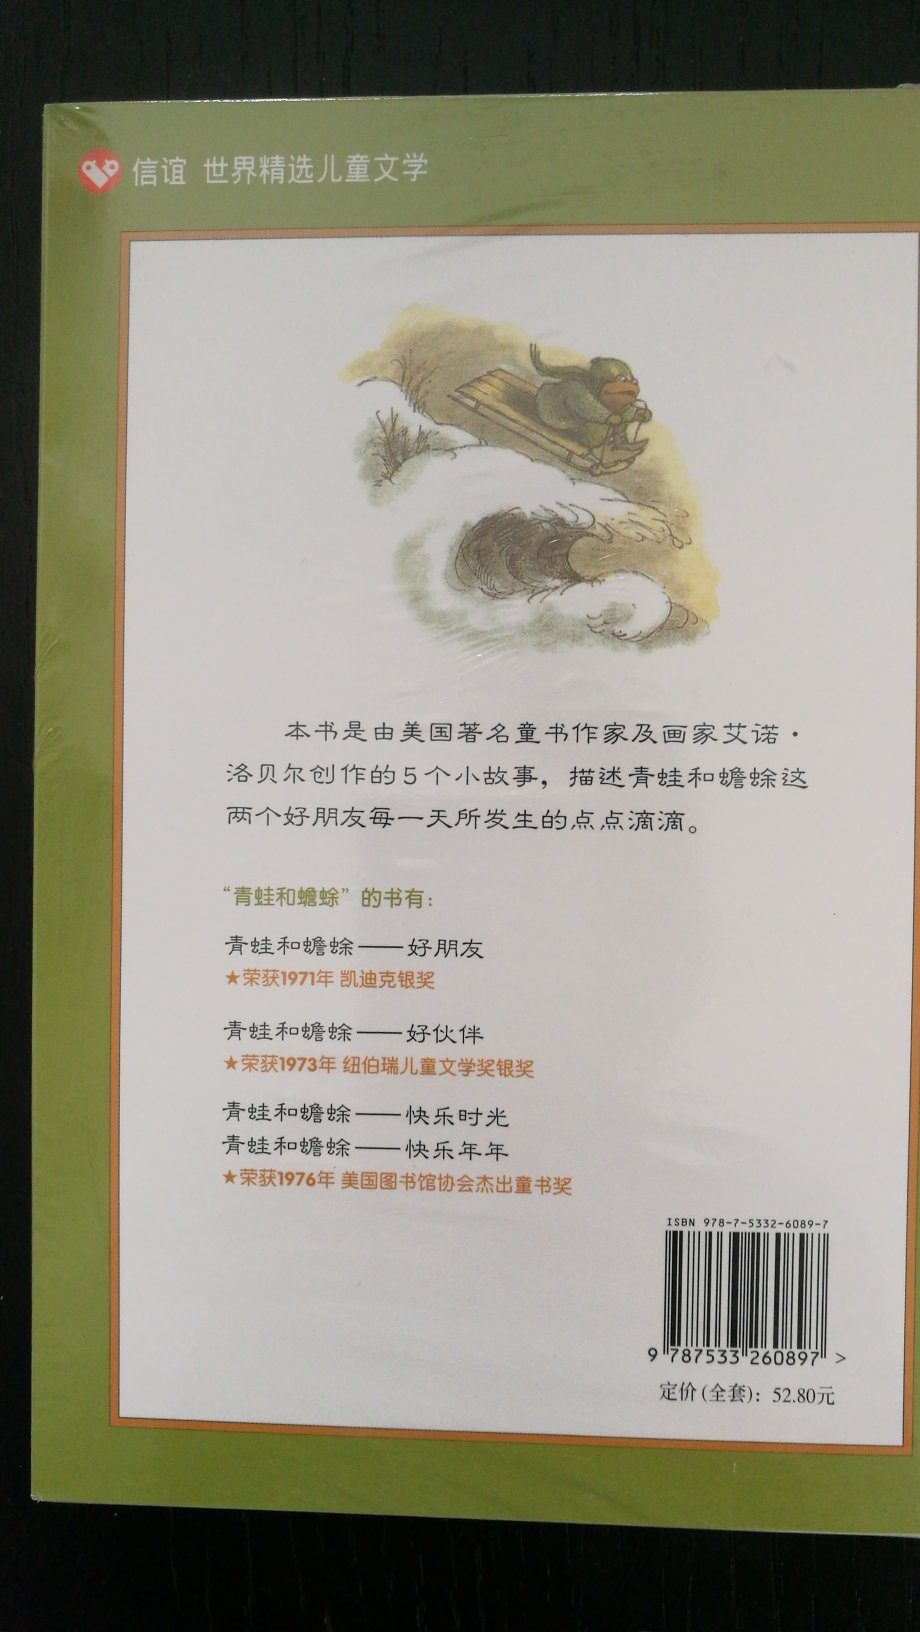 《信谊世界精选儿童文学：青蛙和蟾蜍》系列共有四册，分别是：《青蛙和蟾蜍──好朋友》、《青蛙和蟾蜍──好伙伴》、《青蛙和蟾蜍──快乐时光》、《青蛙和蟾蜍──快乐年年》。　　《信谊世界精选儿童文学：青蛙和蟾蜍（套装全4册）》是由美国童书作家及画家艾诺·洛贝尔创作的5个小故事，描述青蛙和蟾蜍这两个好朋友每一天所发生的点点滴滴。内容简介　　《信谊世界精选儿童文学：青蛙和蟾蜍（套装全4册）》故事主要是在述说主角青蛙与蟾蜍这一对好朋友生活当中的种种趣事。文字优美流畅，叙述方式幽默童趣，故事感人又好玩，这两个角色表现出的童心及纯真的友谊将使读者会心一笑。他们的友情与默契贯串所有的故事，让读者在阅读时，从头到尾都沉浸在一种温馨的情绪中。然而，青蛙与蟾蜍特殊的个性、出人意料的行为及想法，又让故事的发展充满幽默风趣的惊喜。作者洛贝尔运用日常生活中平凡的场境及生活点滴，透过想象的魔力，直接带领读者打开神奇的幸福宝藏，品味美丽、真挚的友谊。没有严肃的教条味，也没有沉重的批判思考，满满是至真至情，挑动读者内心深处原始而纯真的感动。其故事在文字